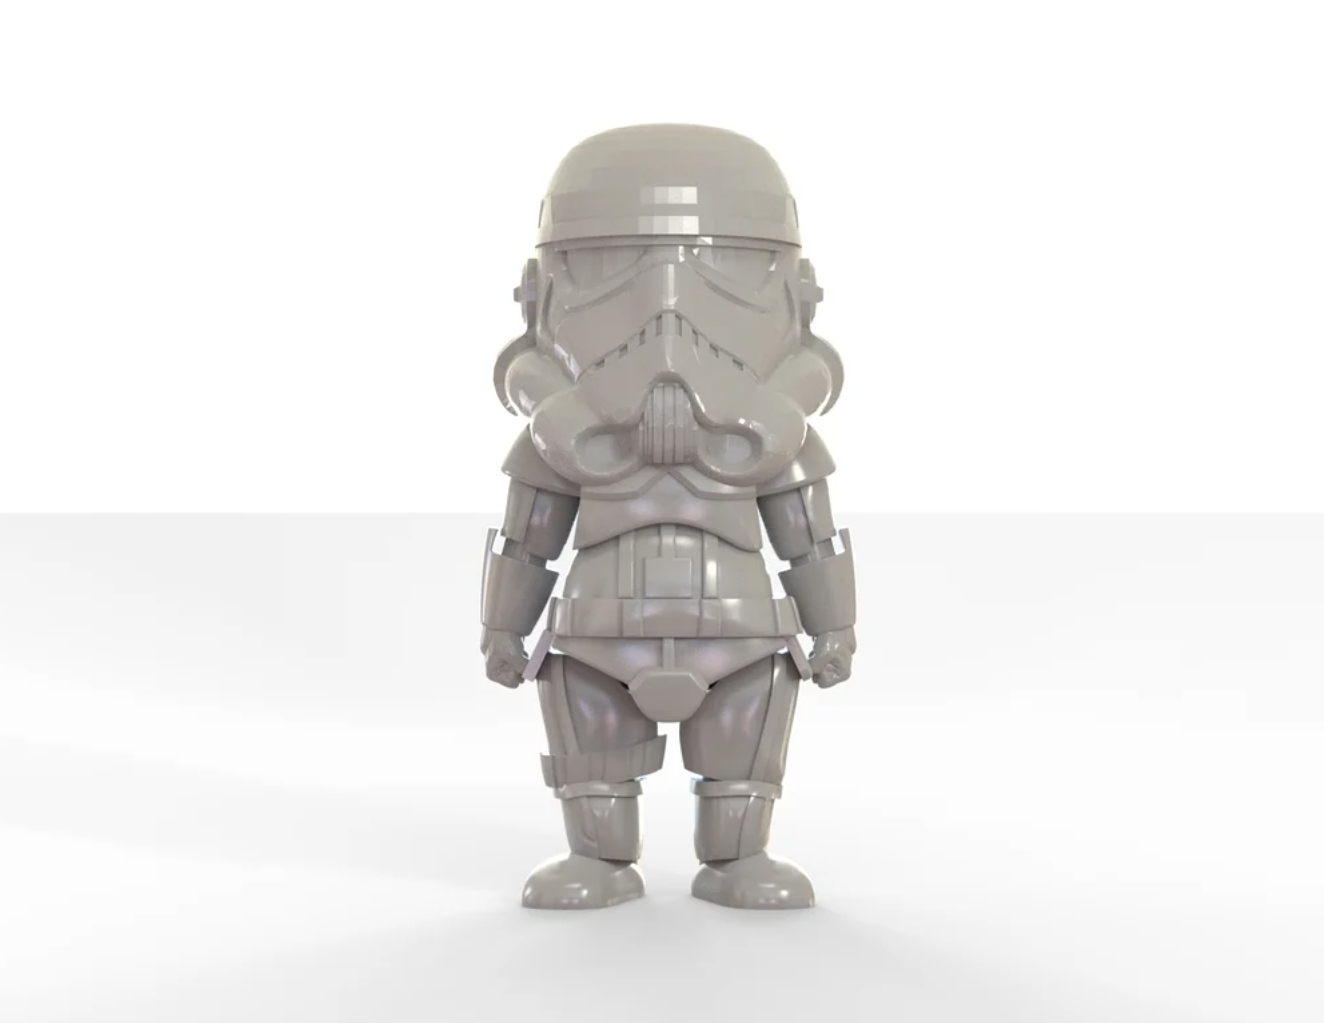 3D Printed Star Wars Figures-Cute Stormtrooper